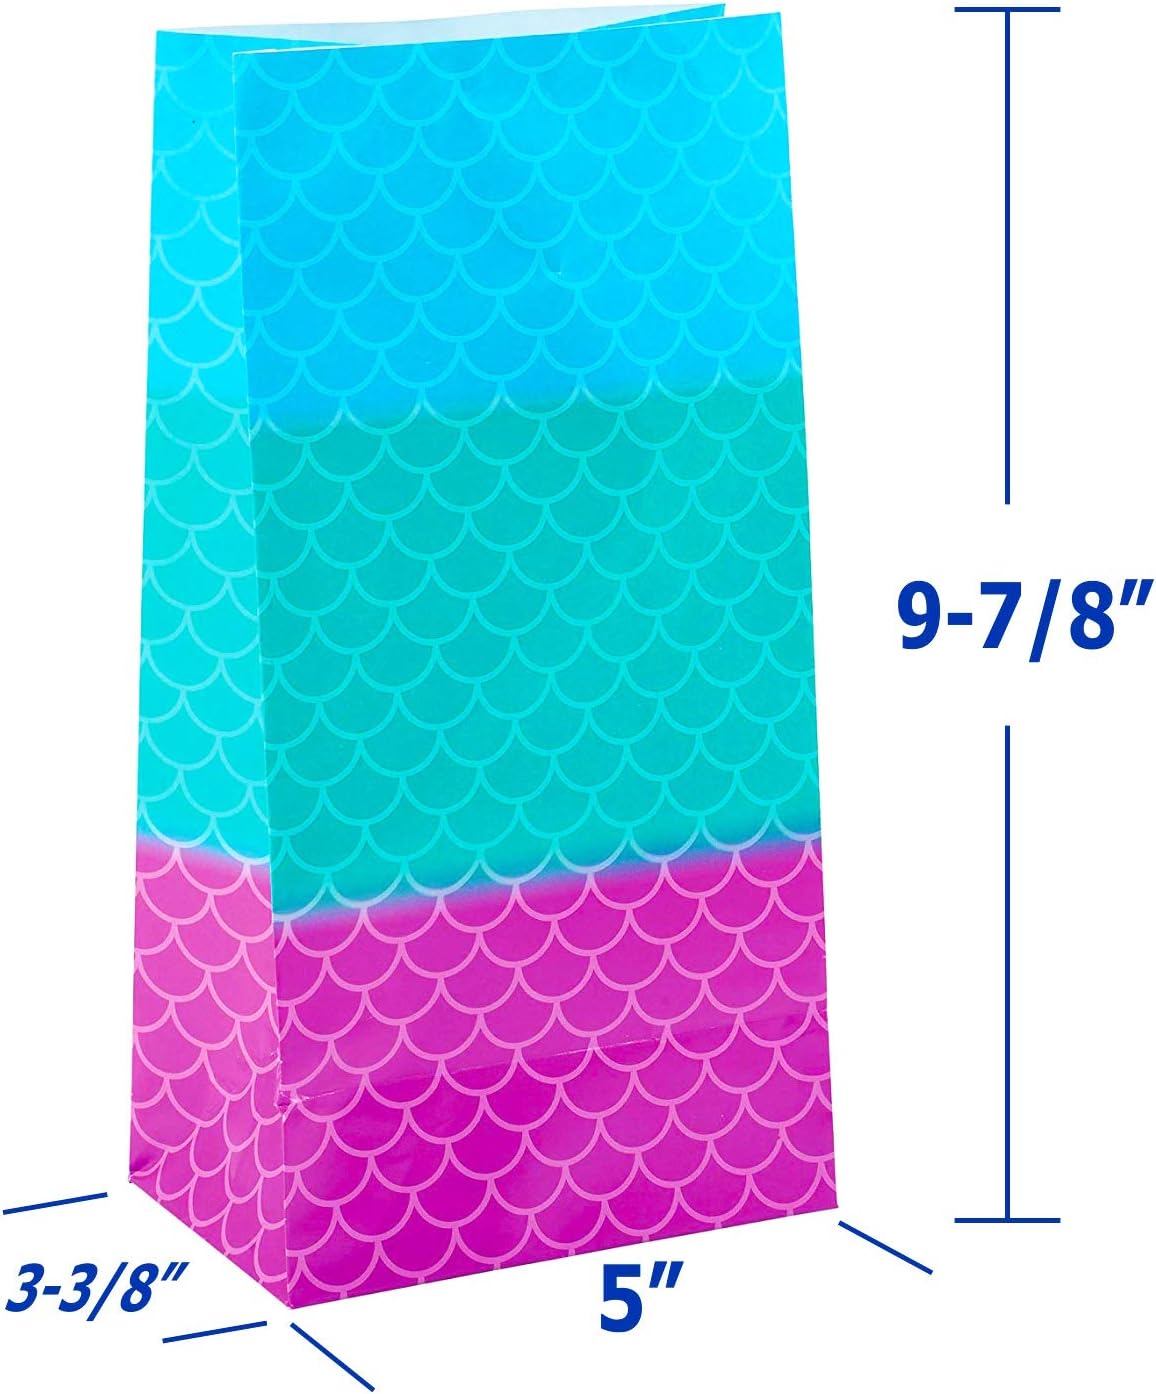 GIFTEXPRESS 24 bolsas de fiesta de sirena (9 7/8 pulgadas de largo x 5 pulgadas de ancho x 3 3/8 pulgadas de profundidad). 